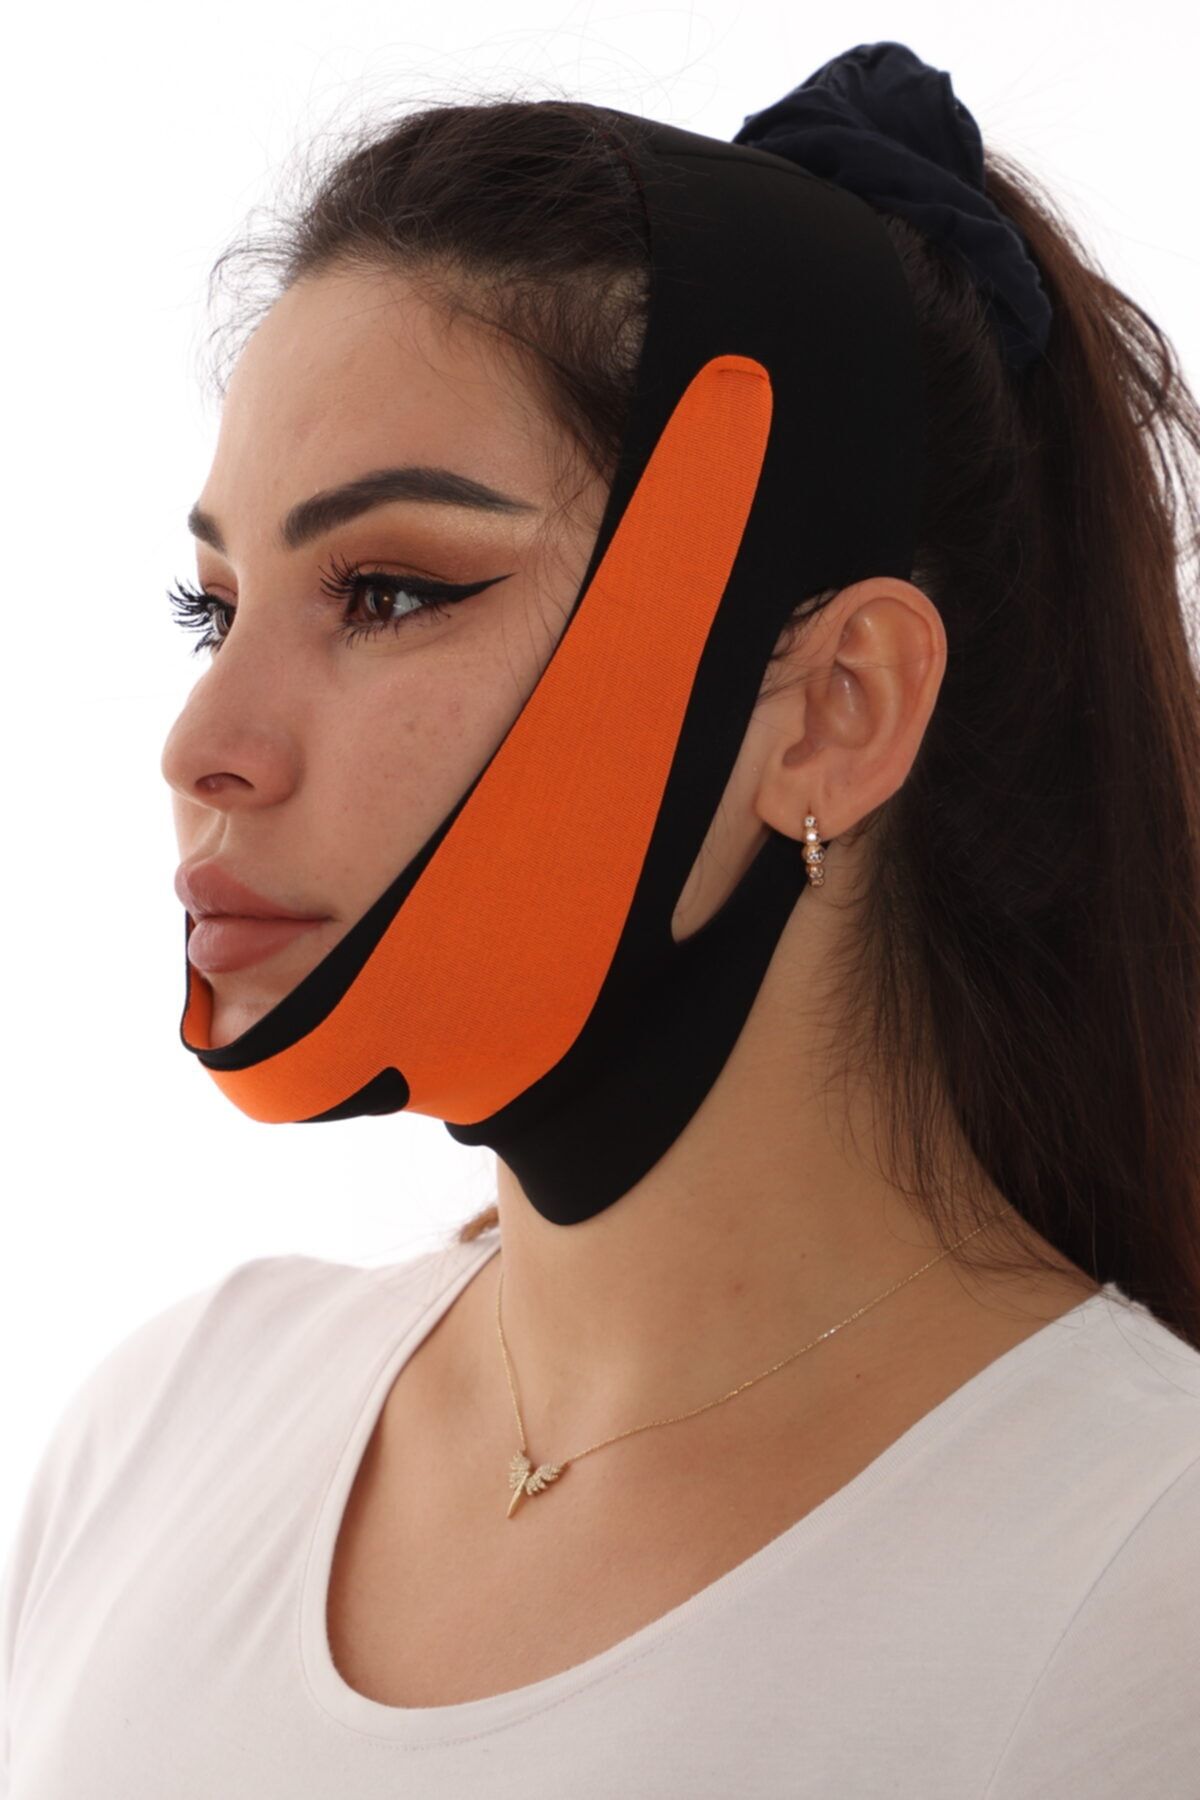 SAUNA SUIT Çene Bandı Yüz Liposuction Gıdı Yüz Korsesi Bandajı